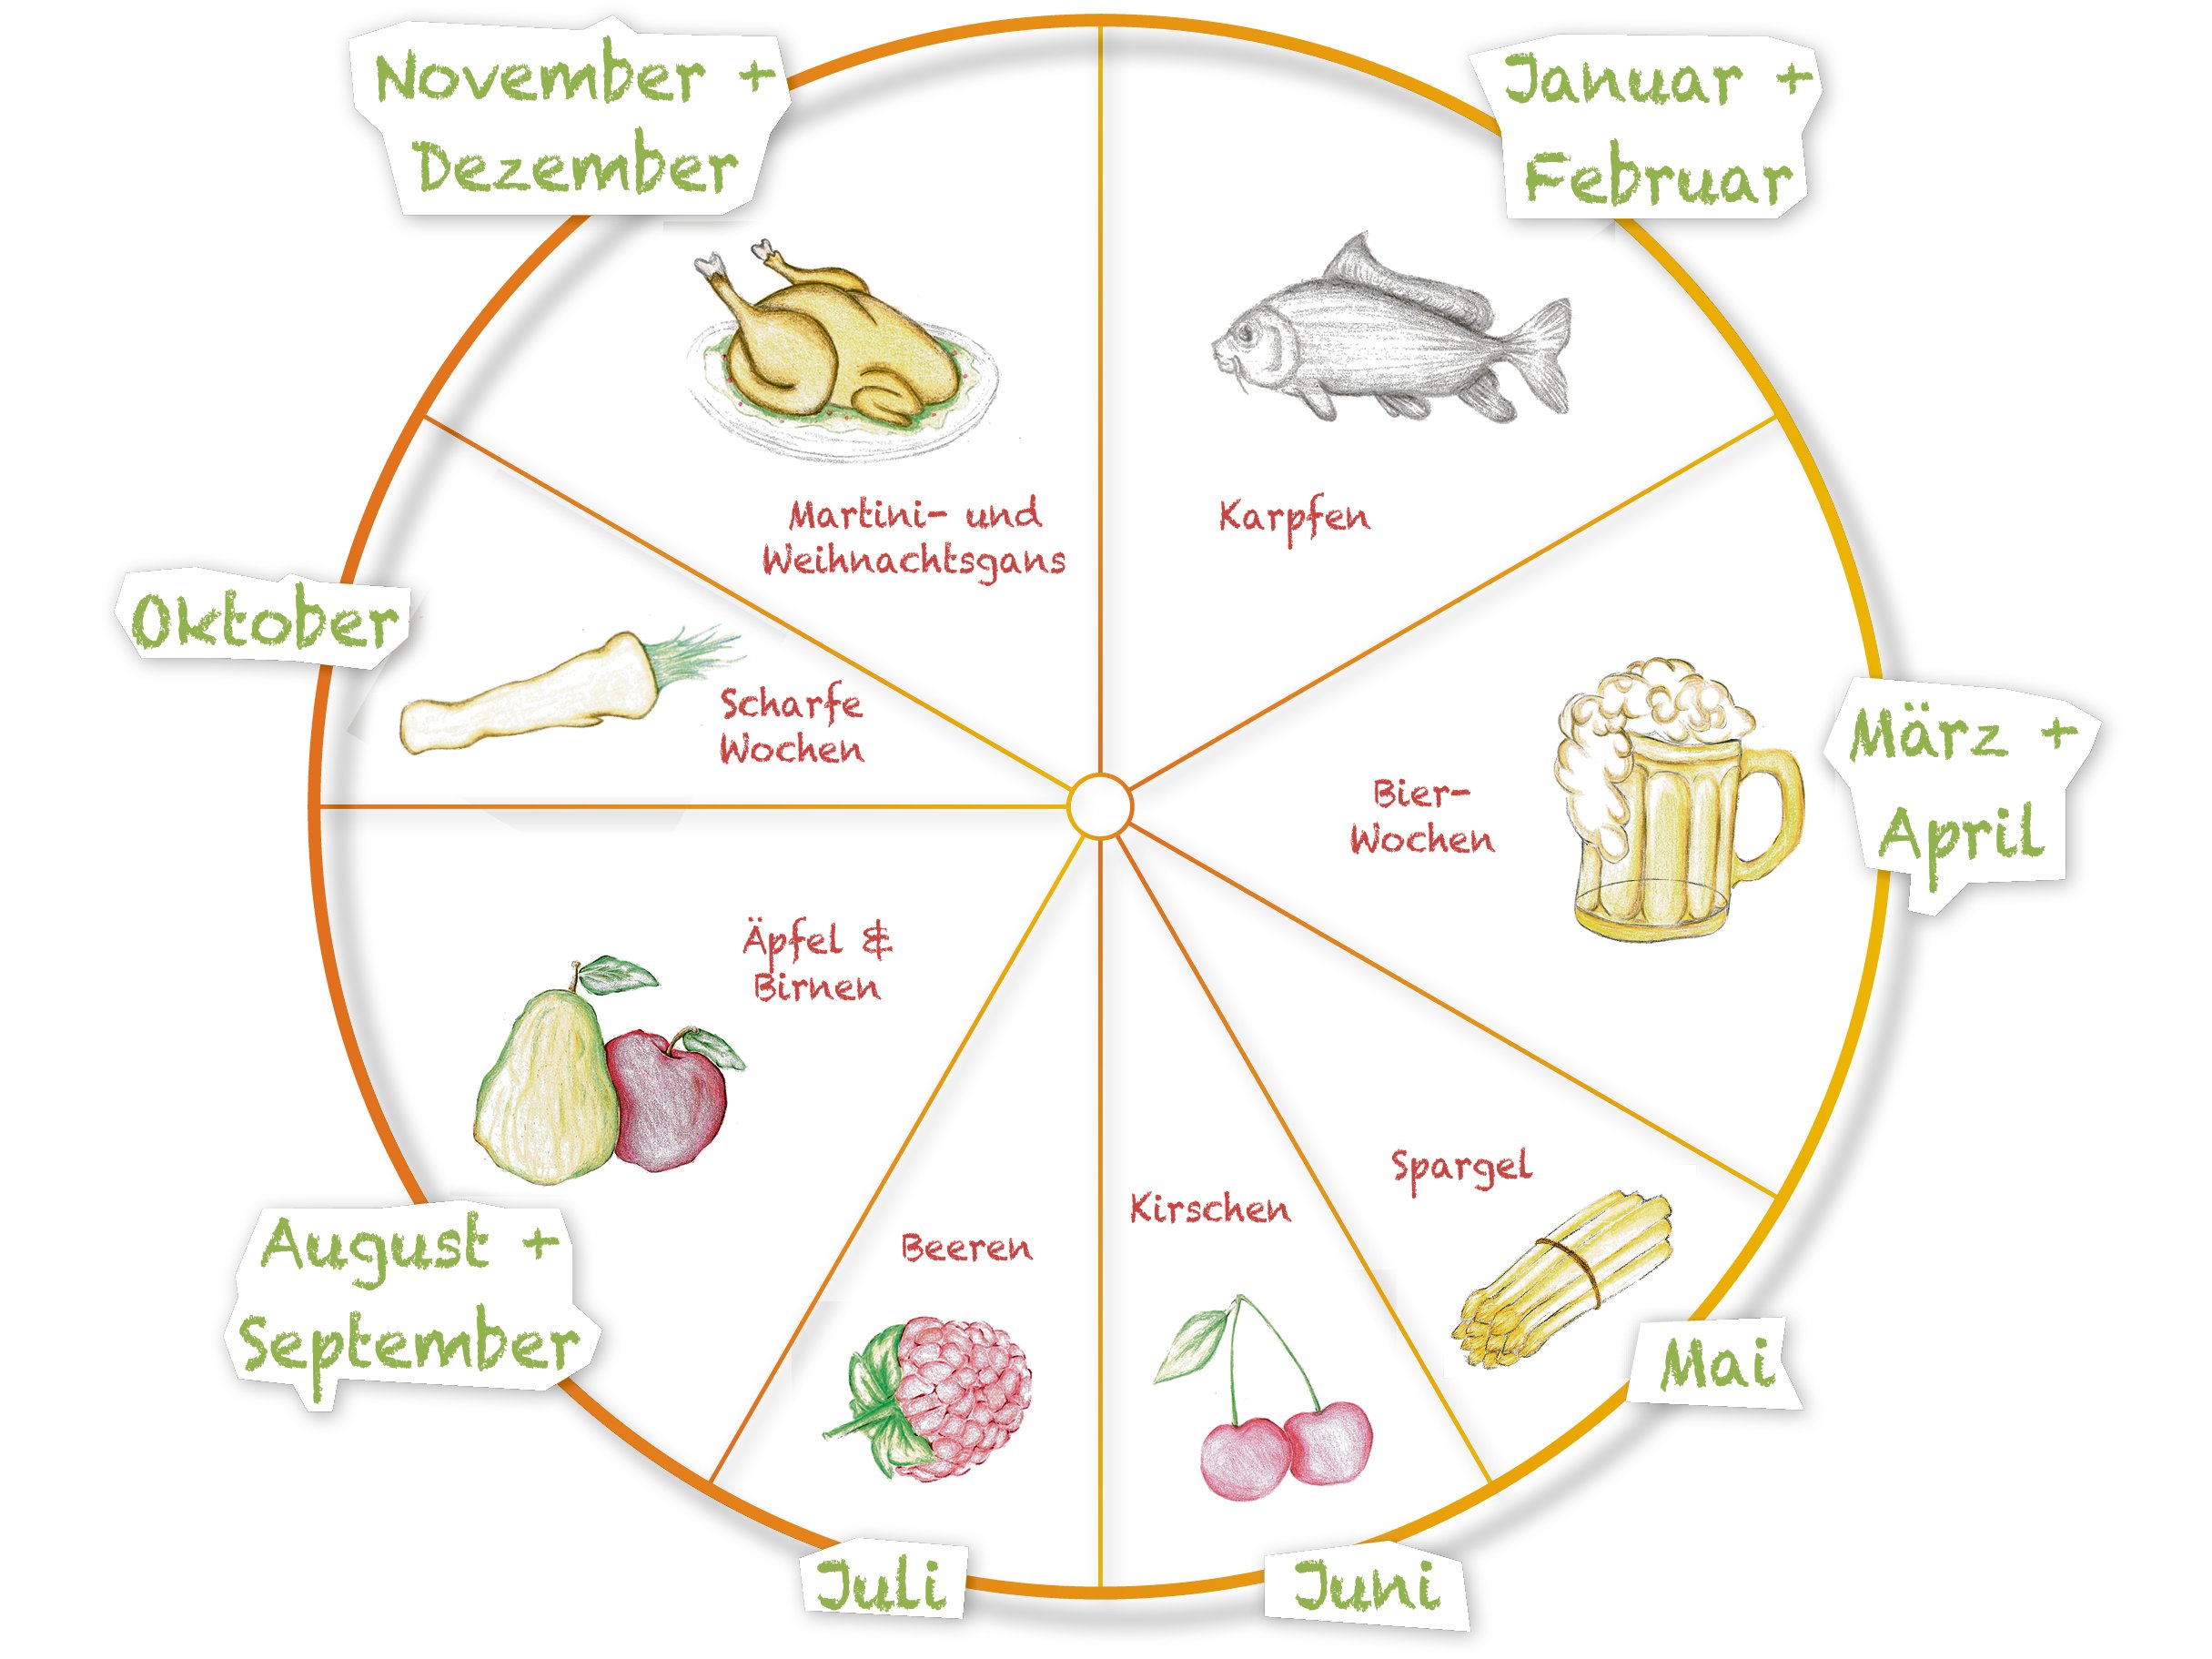 Von Hand als Kreis gezeichneter Jahreskalender mit regionalen Besonderheiten, wie Karpfen, Kirschen und Bier.